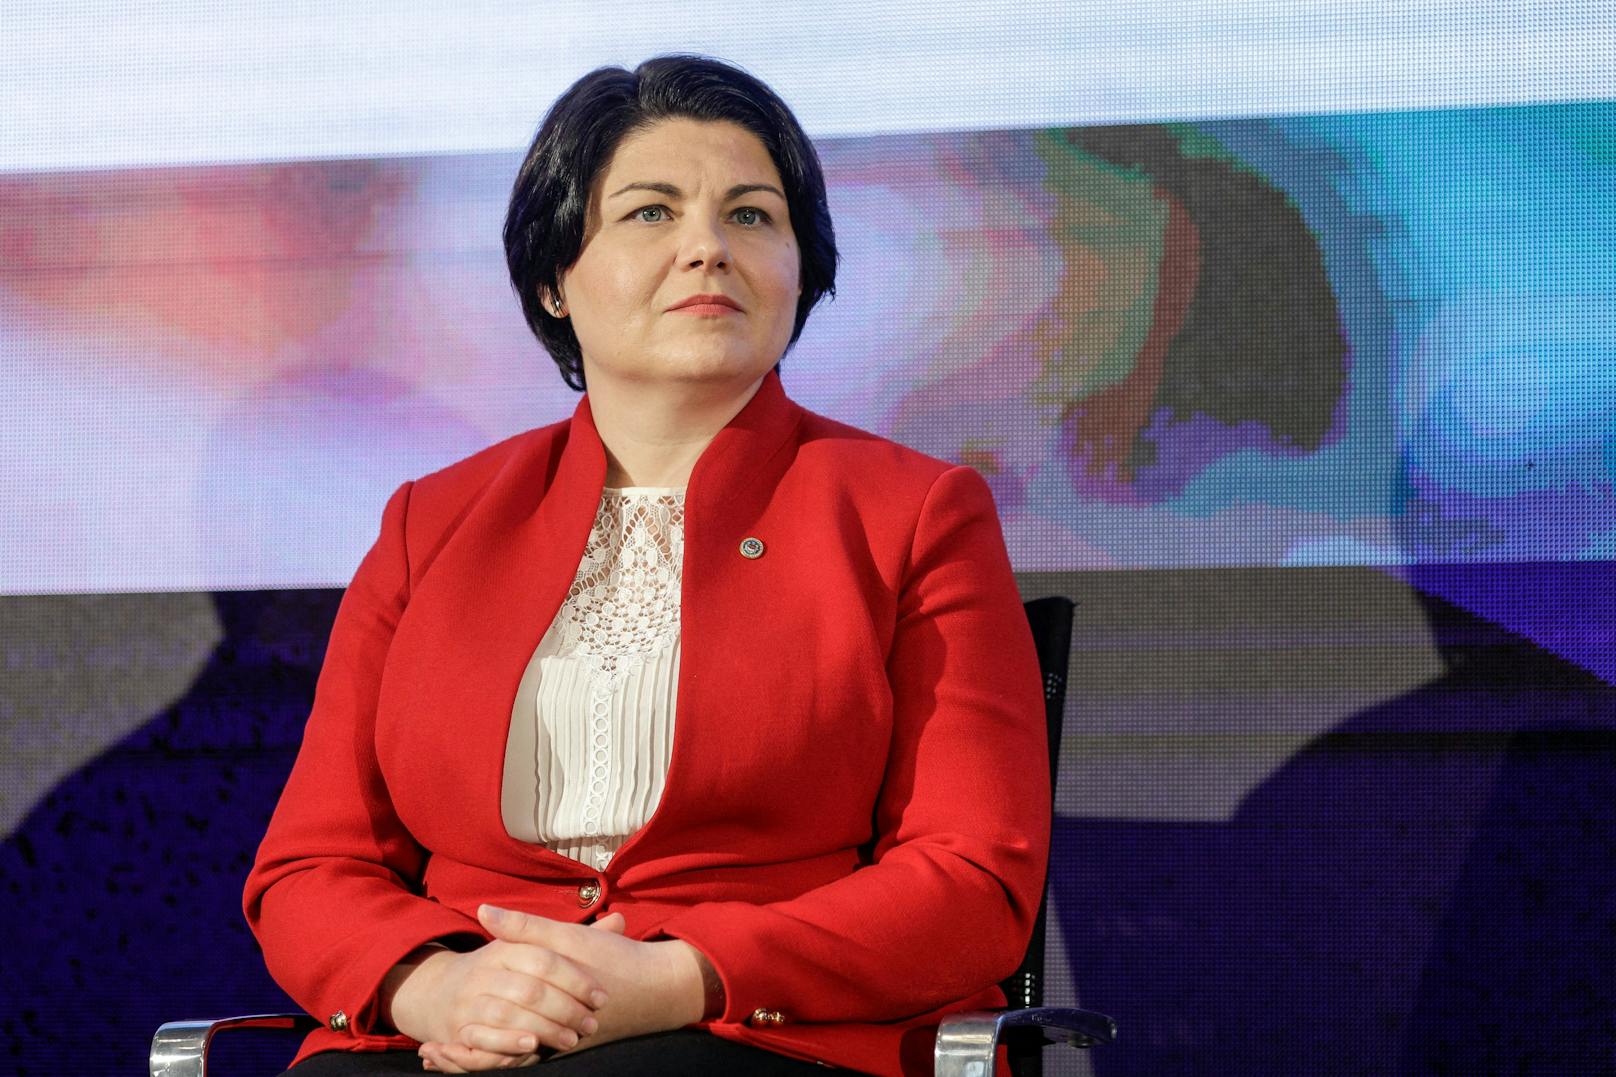 Moldaus Premierministerin Natalia Gavrilita trat am Freitag überraschend zurück.